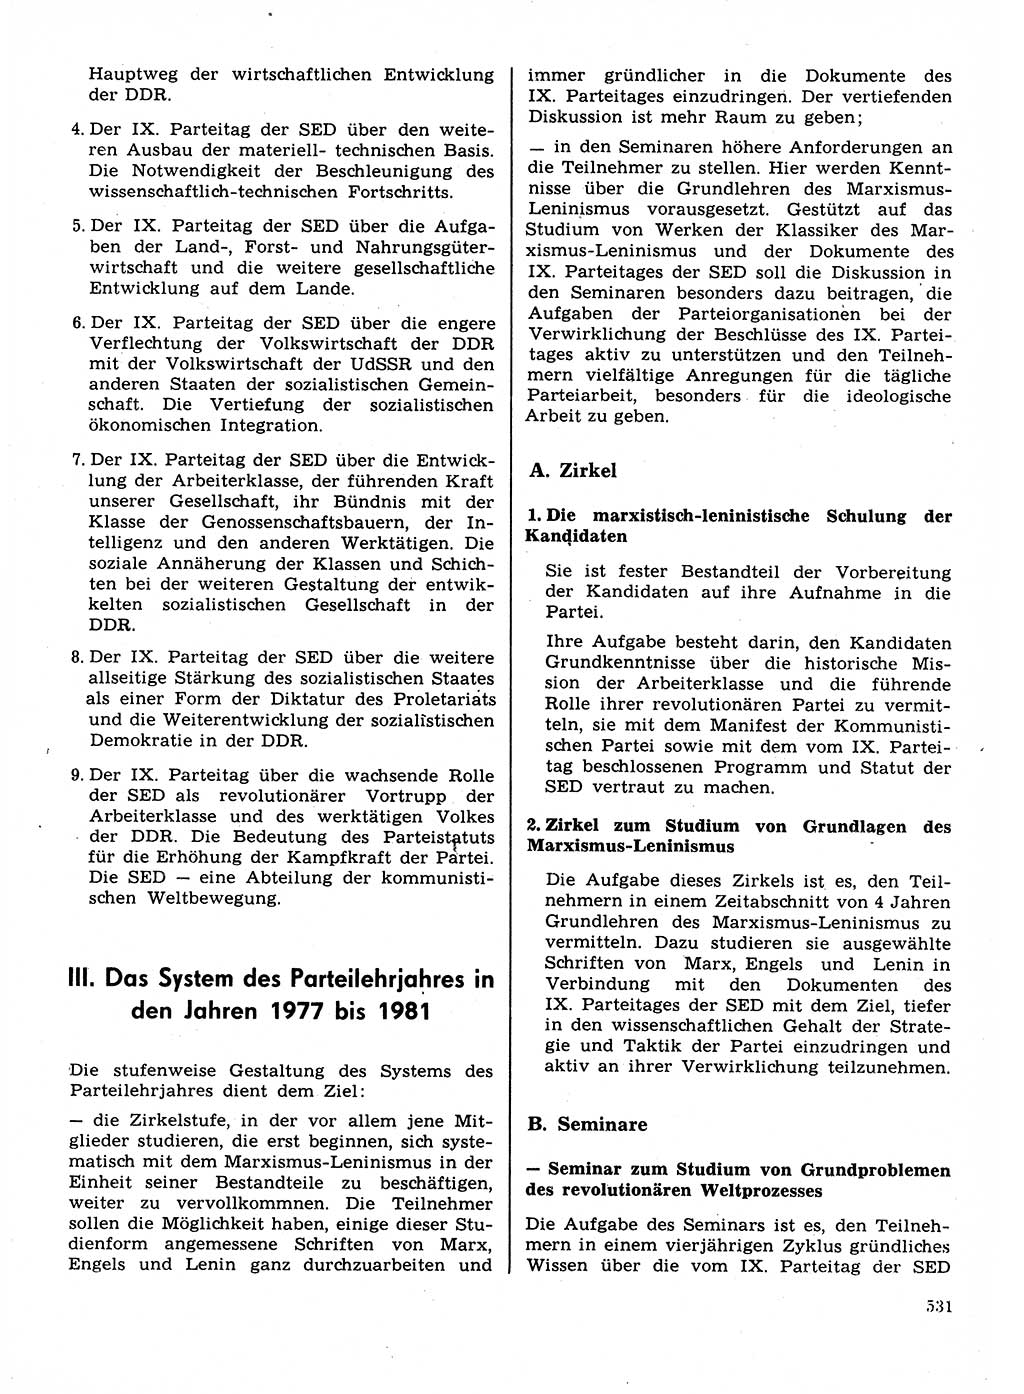 Neuer Weg (NW), Organ des Zentralkomitees (ZK) der SED (Sozialistische Einheitspartei Deutschlands) für Fragen des Parteilebens, 31. Jahrgang [Deutsche Demokratische Republik (DDR)] 1976, Seite 531 (NW ZK SED DDR 1976, S. 531)